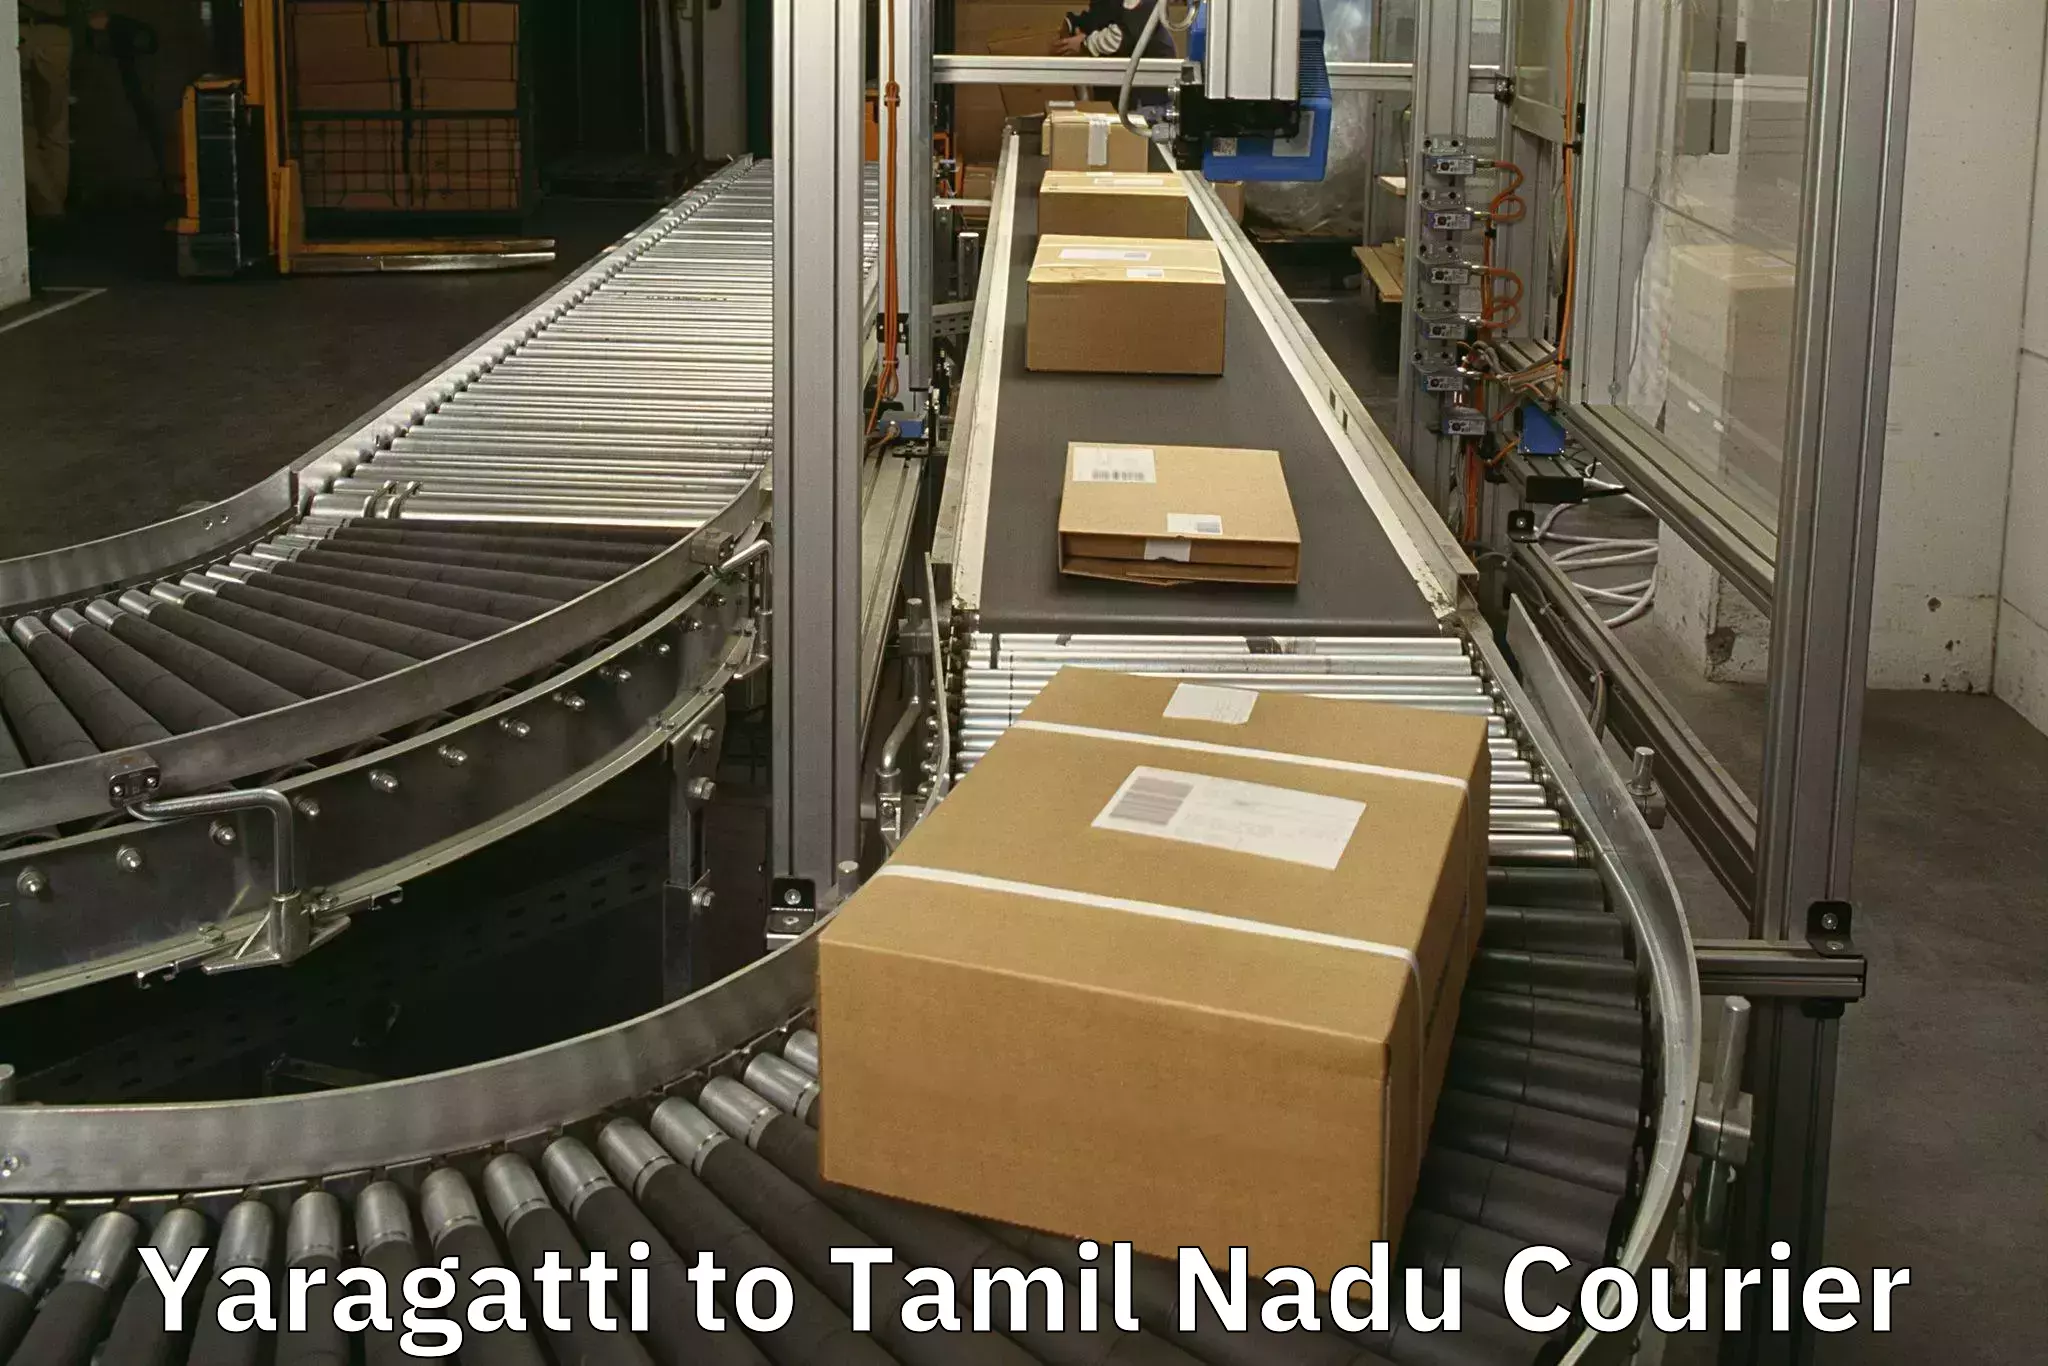 Digital baggage courier Yaragatti to Chennai Port